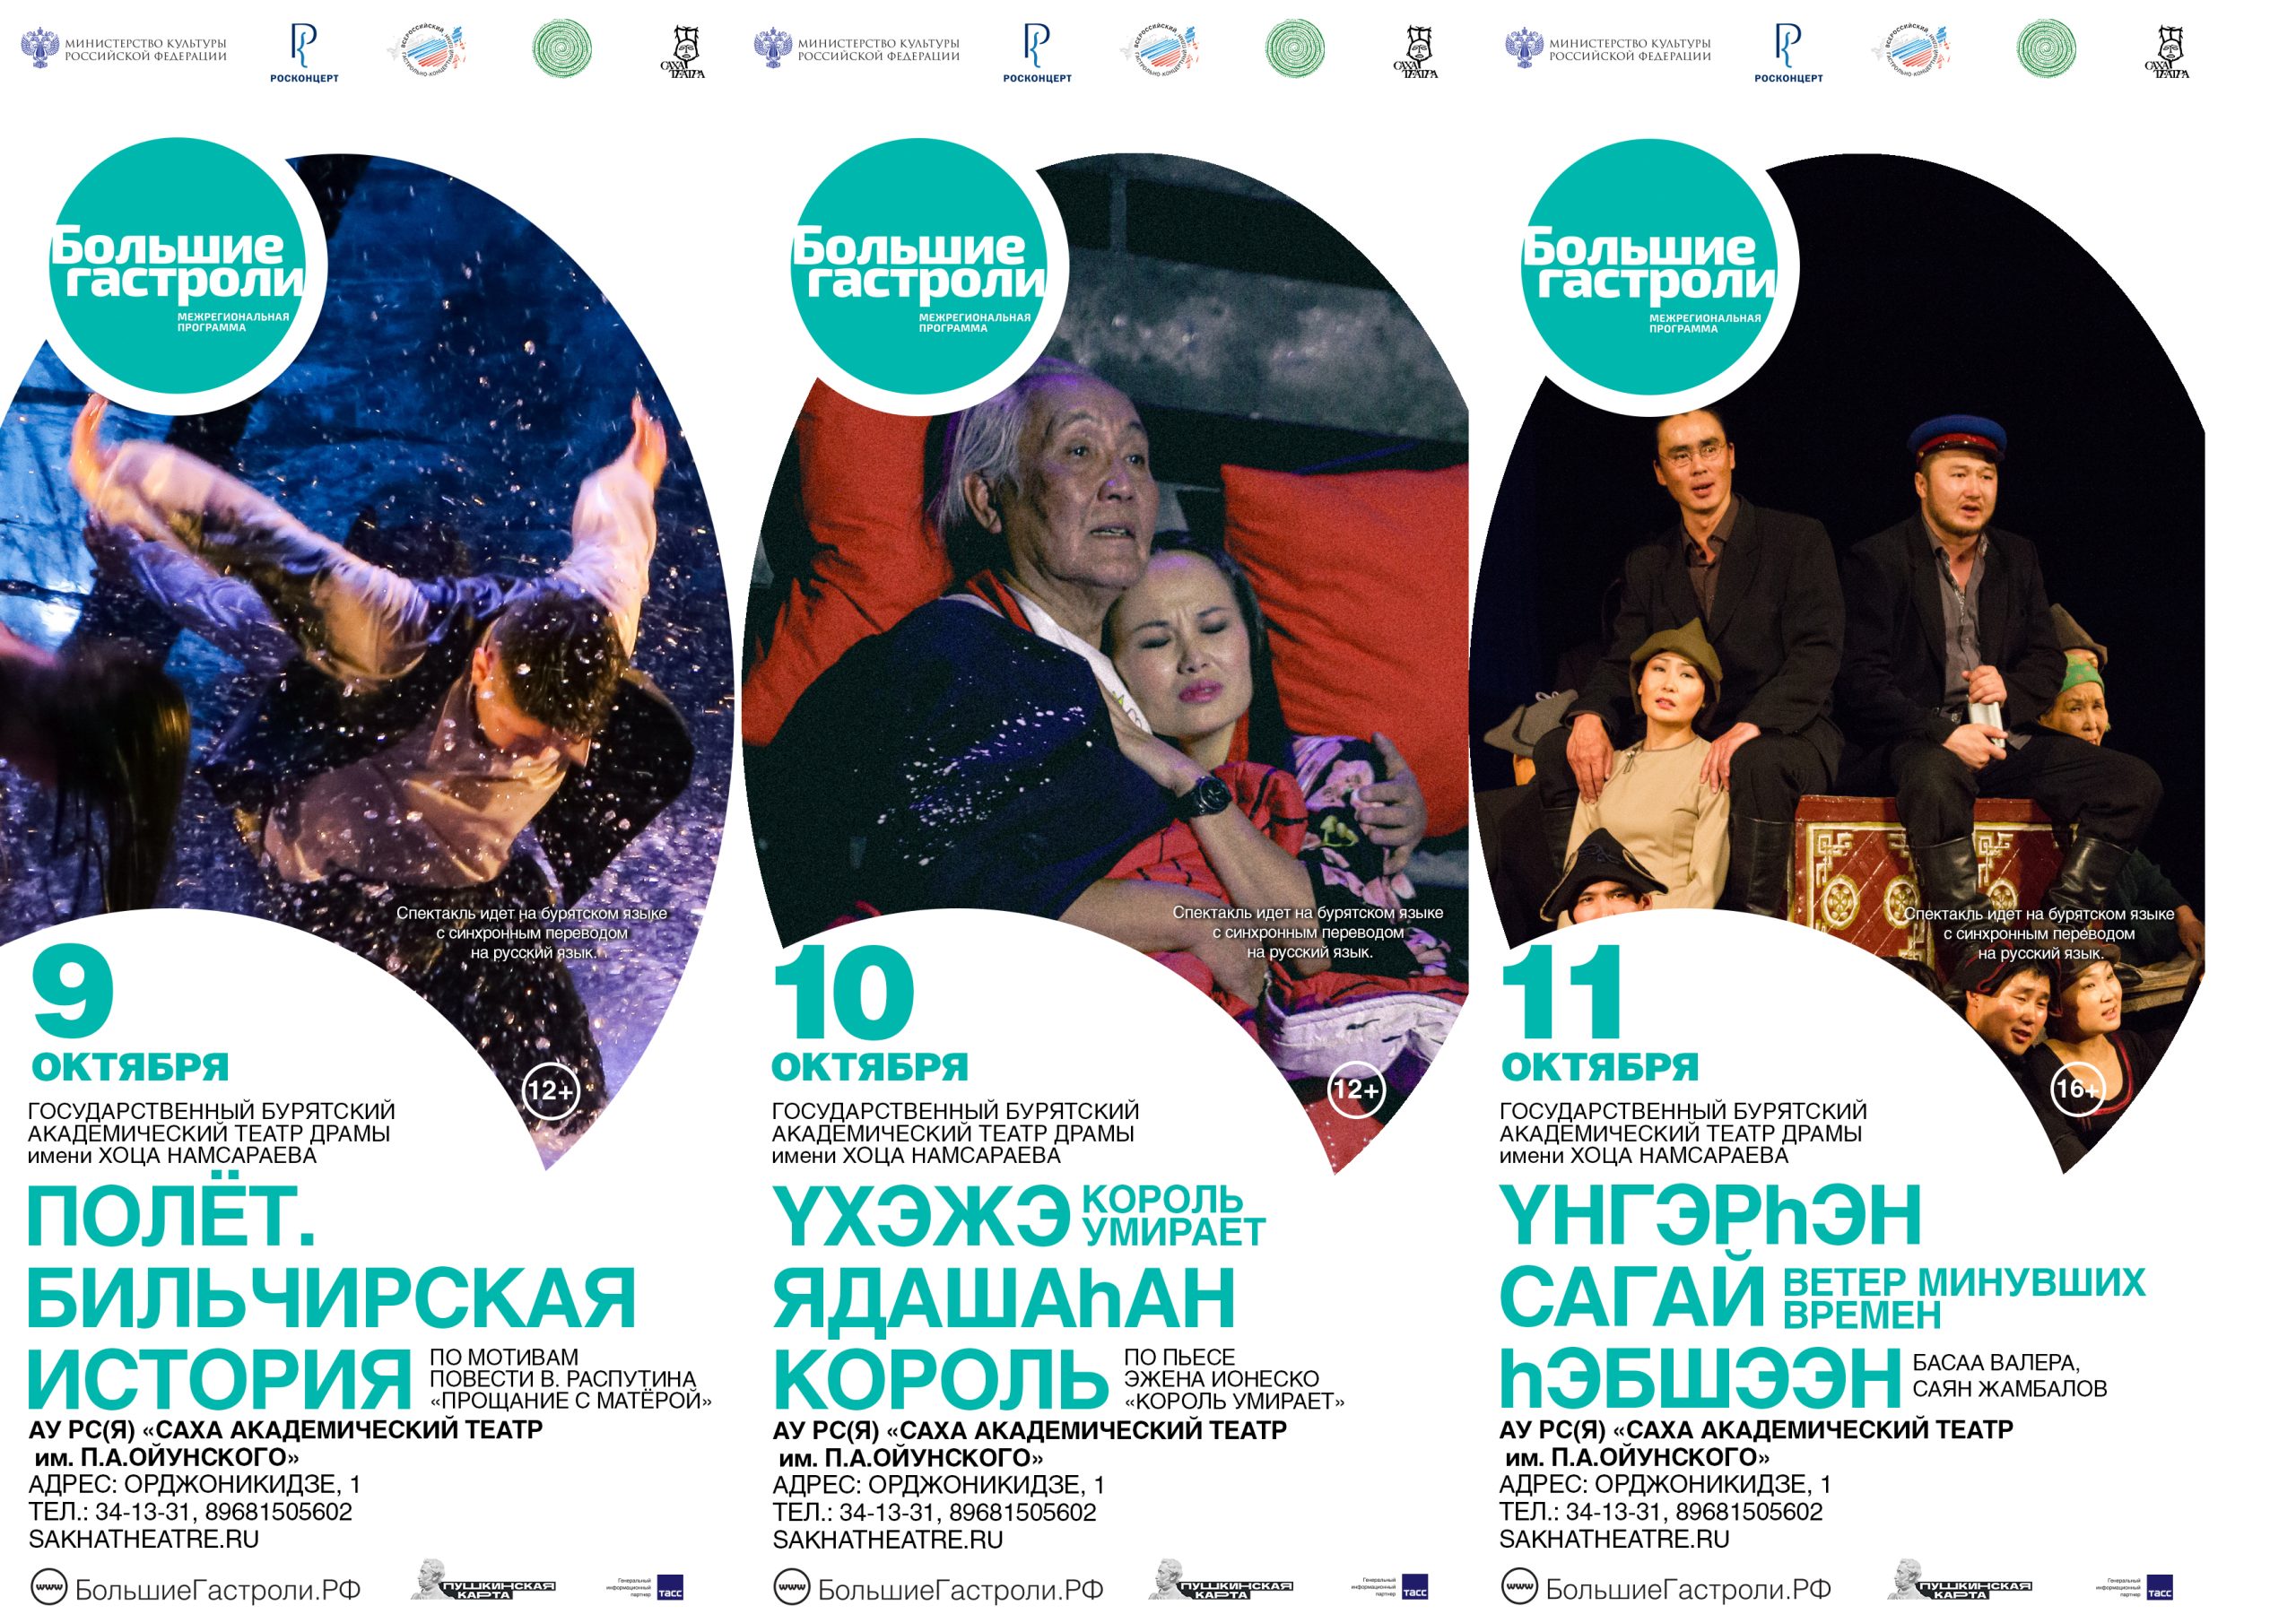 Вы сейчас просматриваете Впервые в Якутске с 9 по 11 октября “Большие гастроли” Бурятского академического театра драмы имени Хоца Намсараева